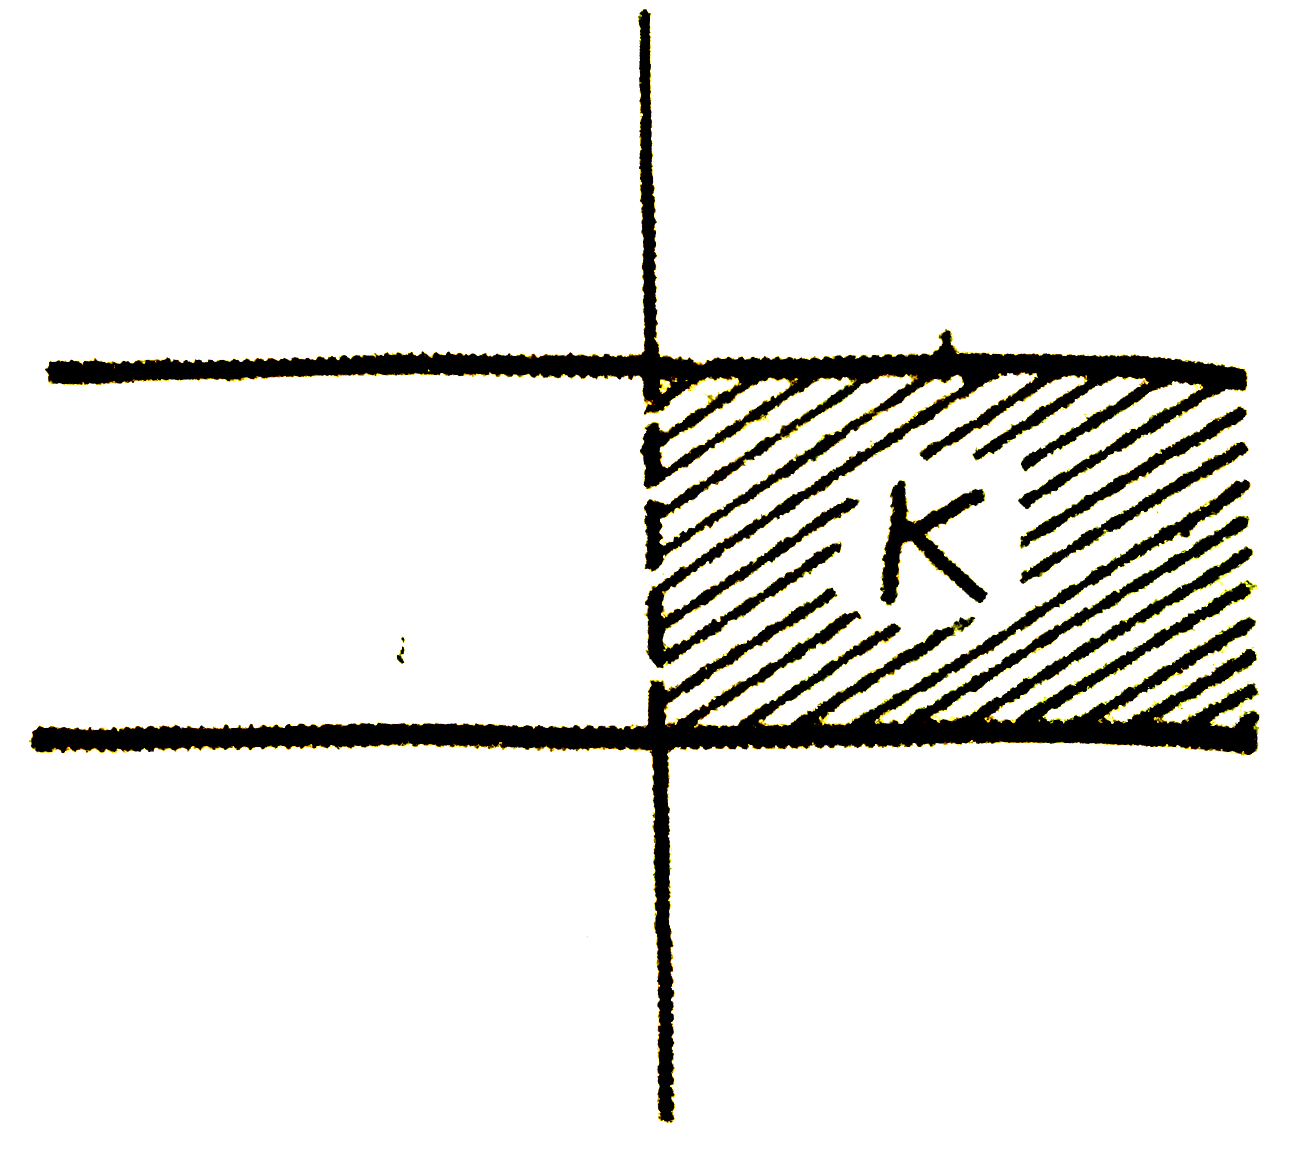 संलग्न चित्र में  प्रदर्शित एक समांतर-प्लेट संधारित्र की प्लेटो के बीच आधे भाग में किसी विद्युतरोधी पदार्थ को जसका परावैद्युतांक K है, खिसकाया जाता है। यदि इसकी प्रारम्भिक धारिता C है तो नई धारिता का क्या मान होगा?